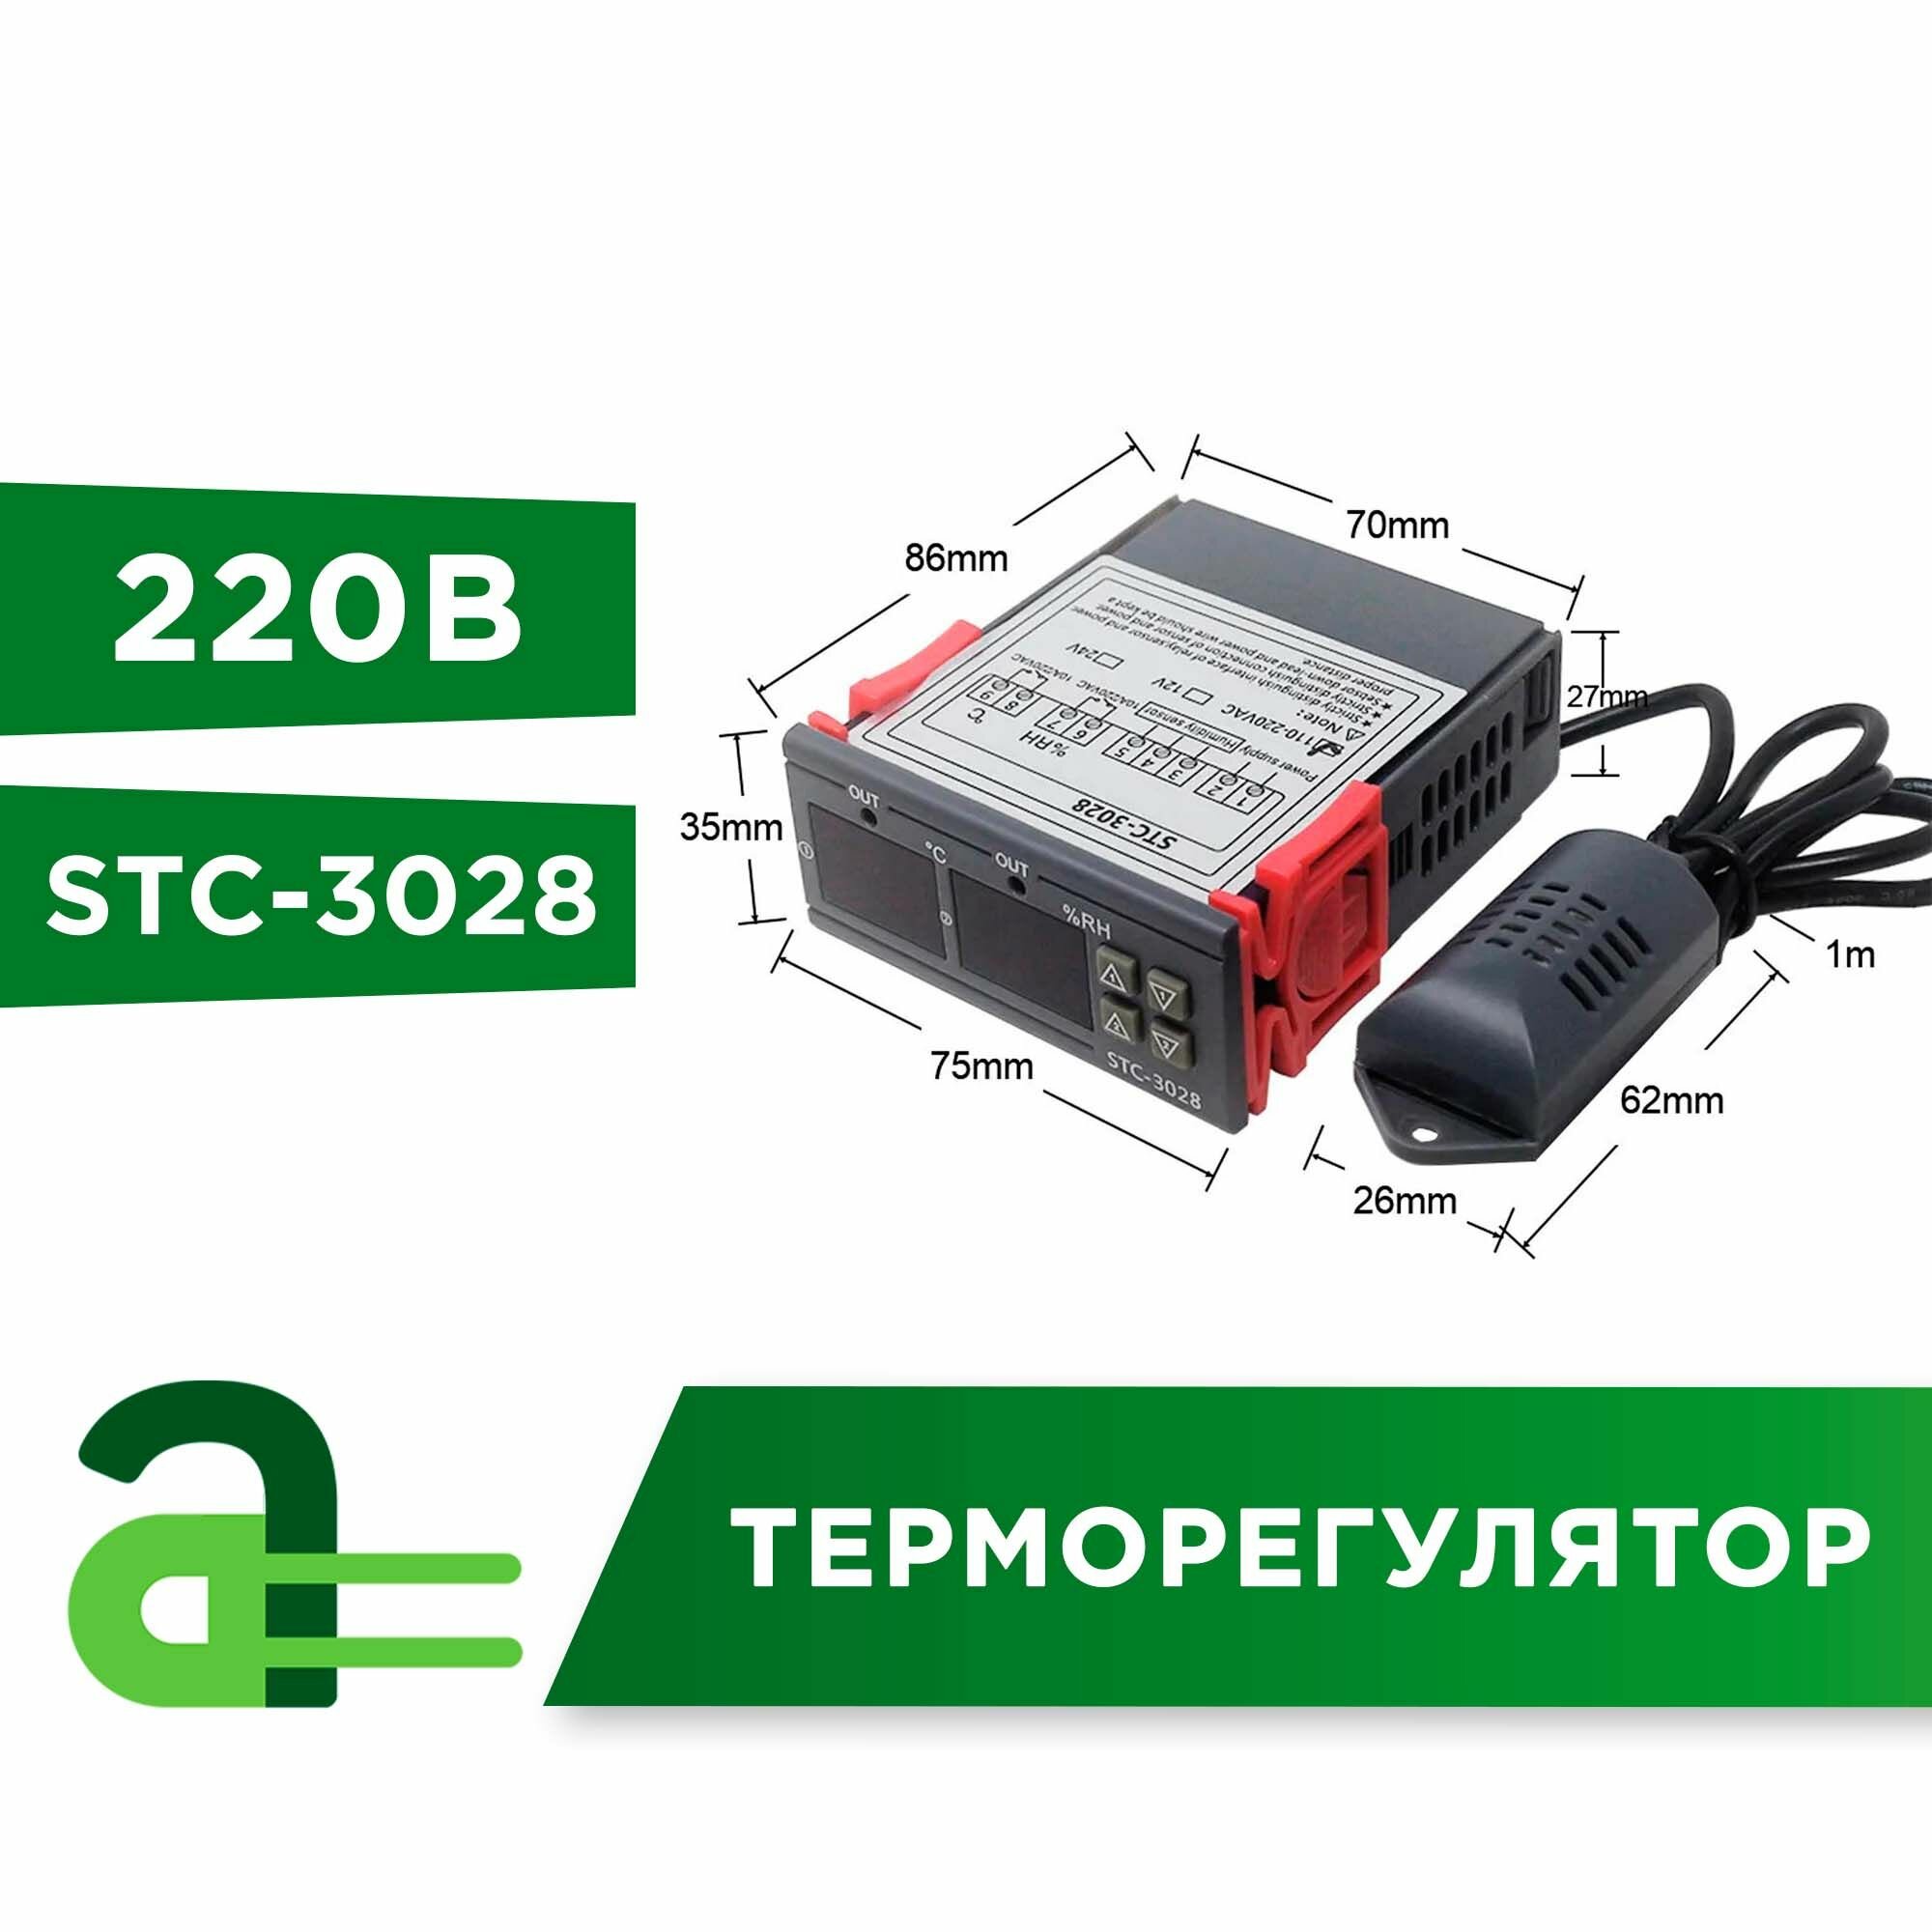 Терморегулятор-гигростат программируемый STC-3028-220